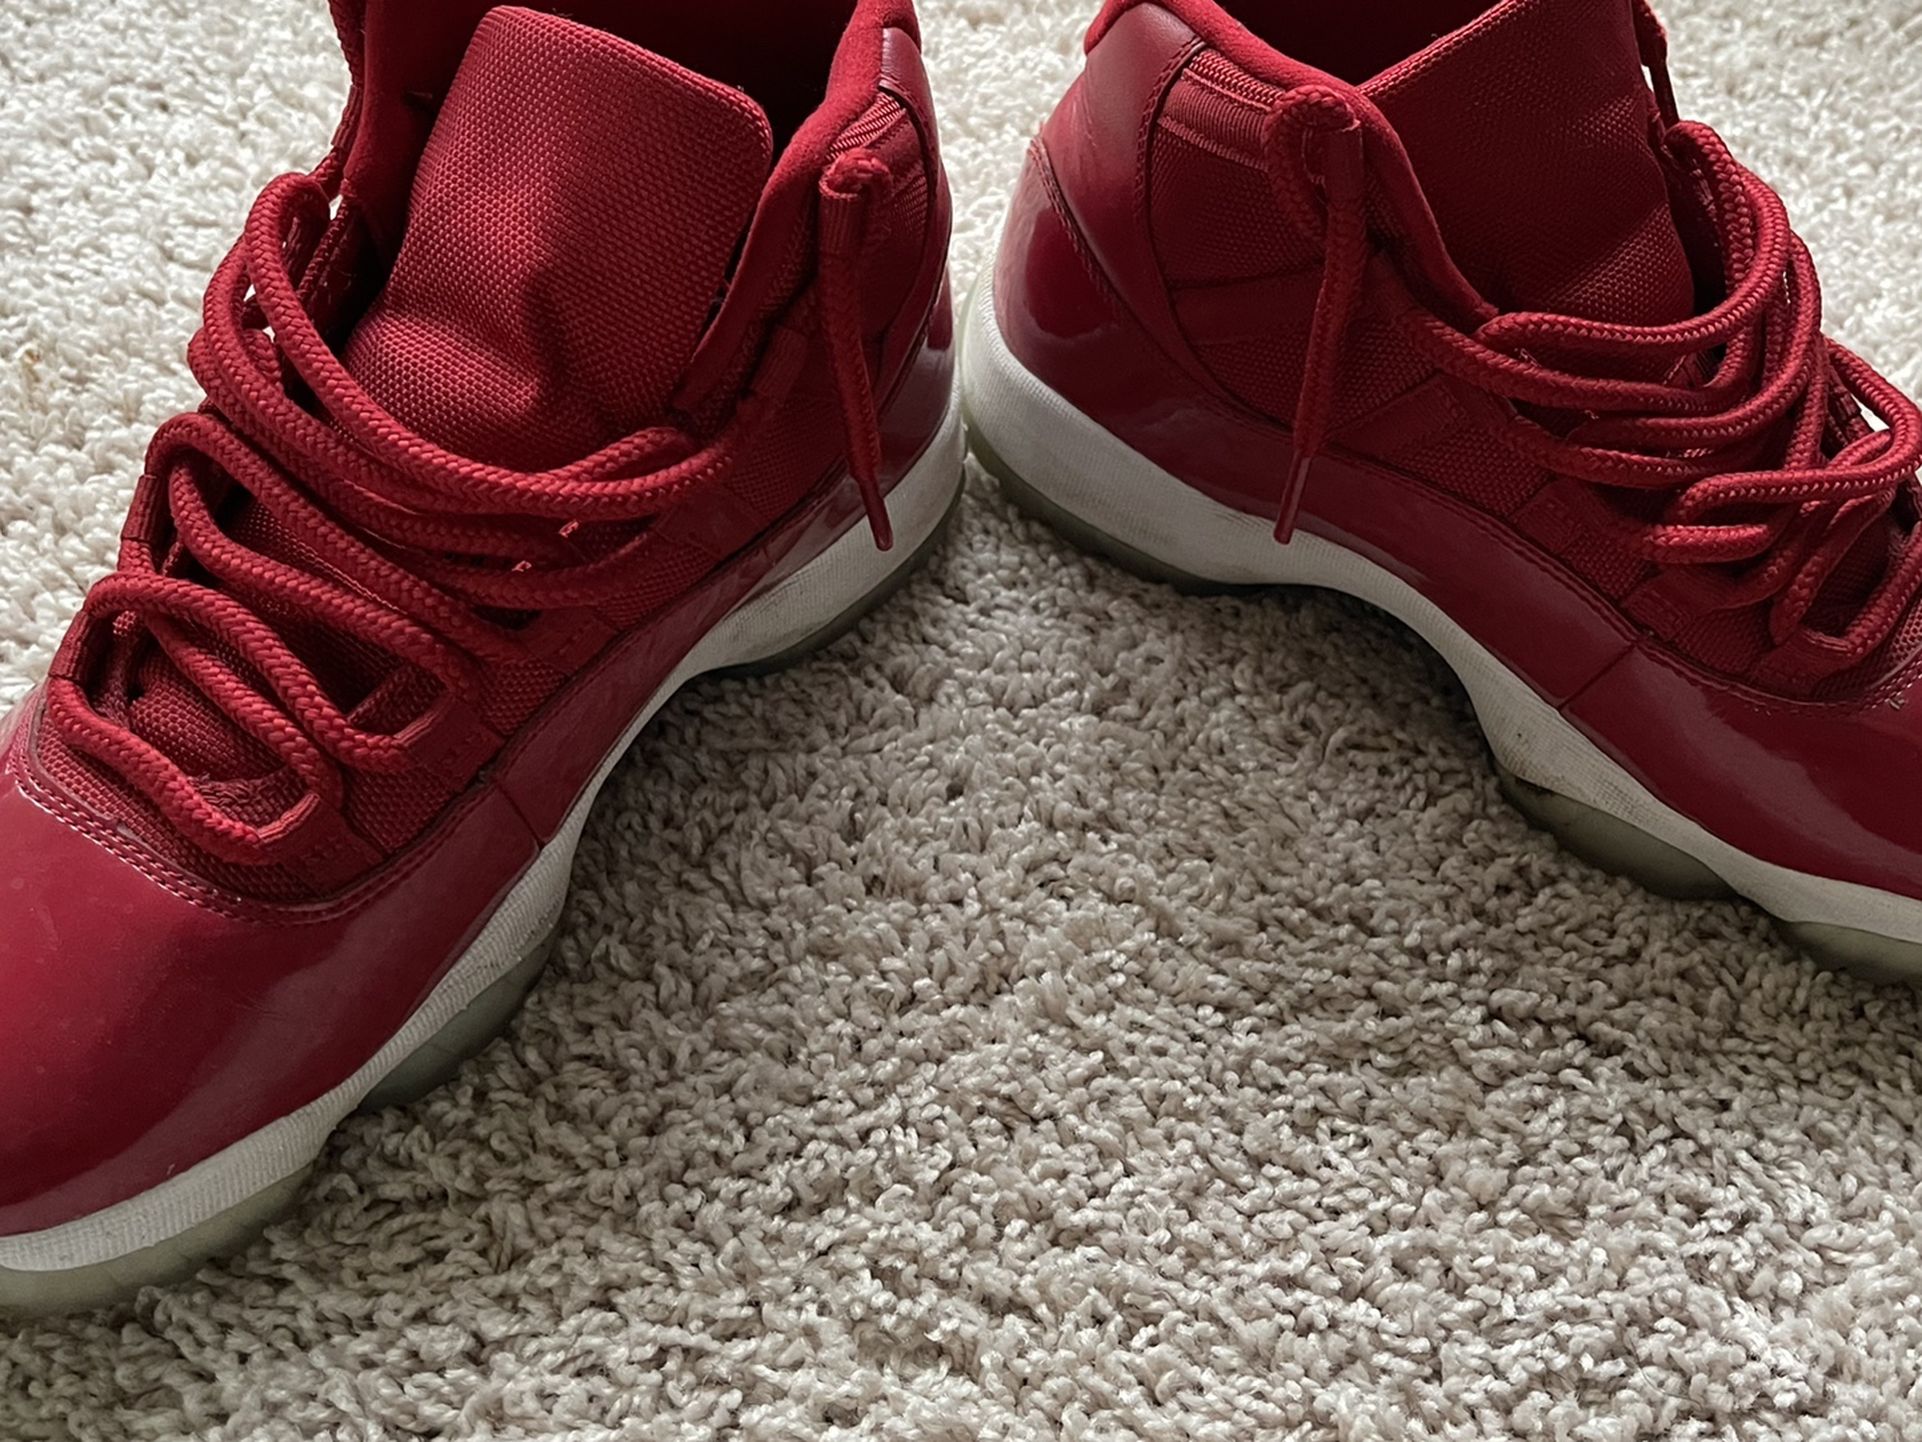 Jordan 11 Size 9